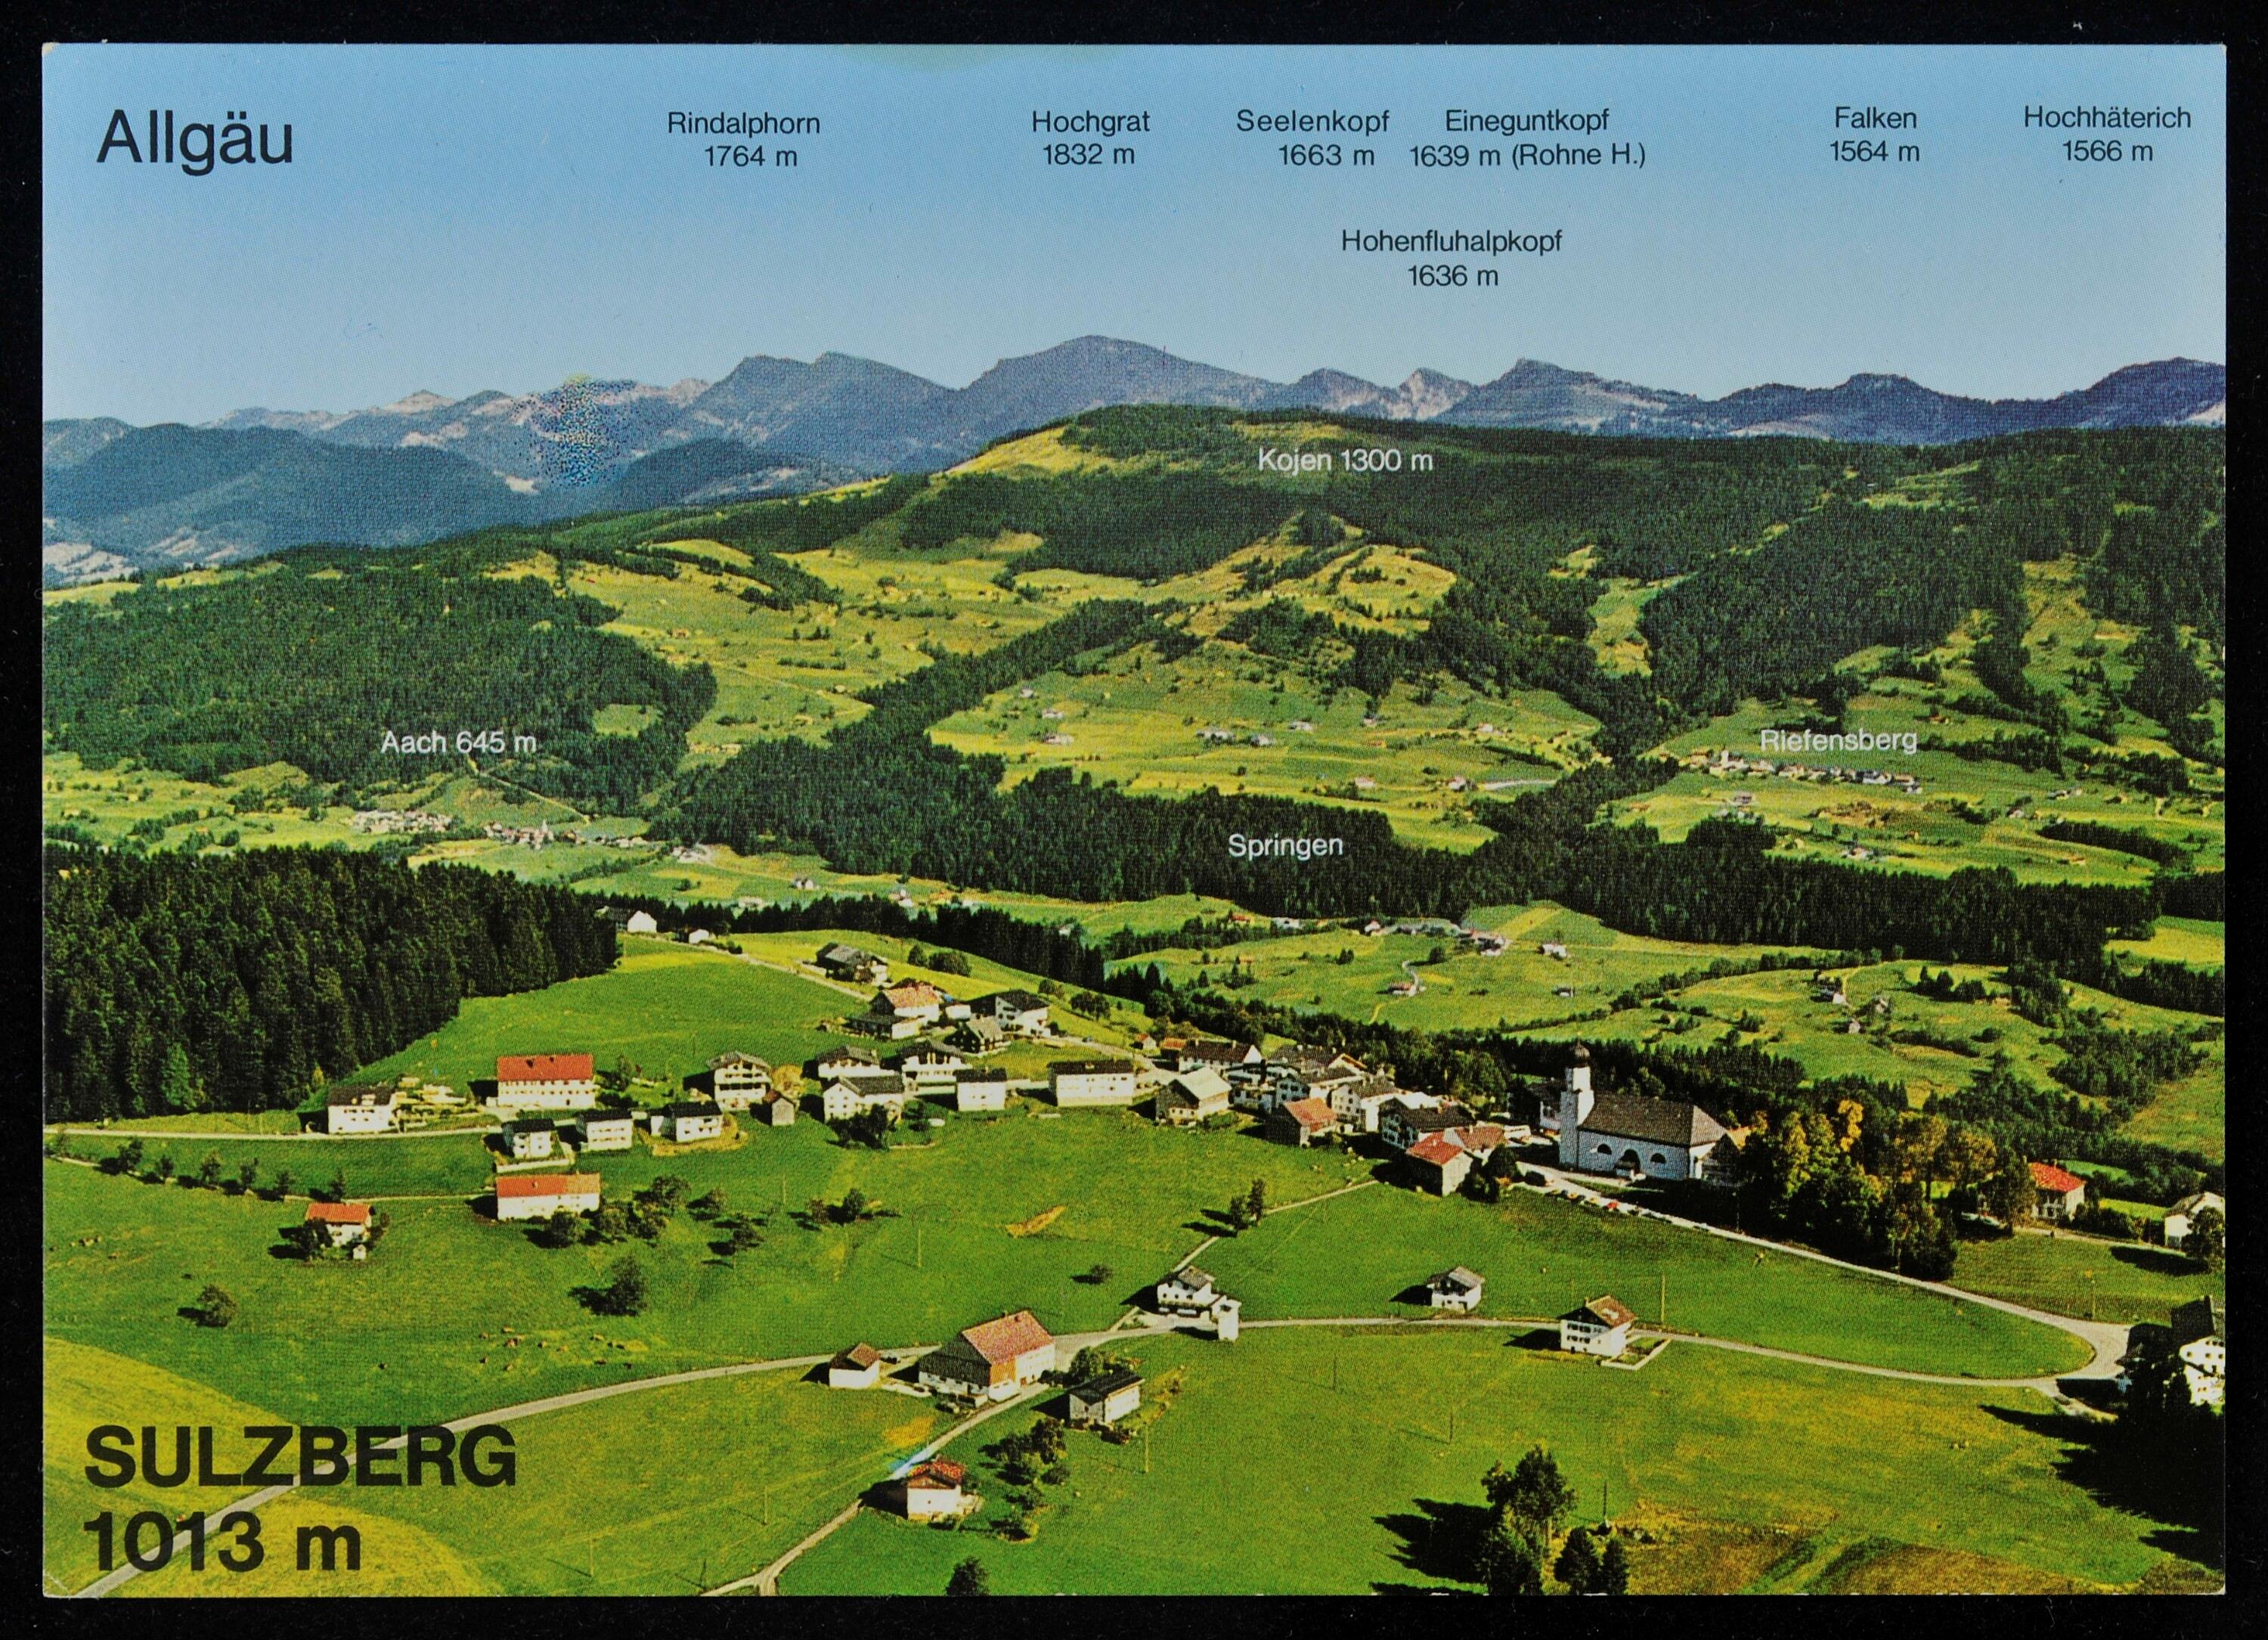 Sulzberg 1013 m></div>


    <hr>
    <div class=